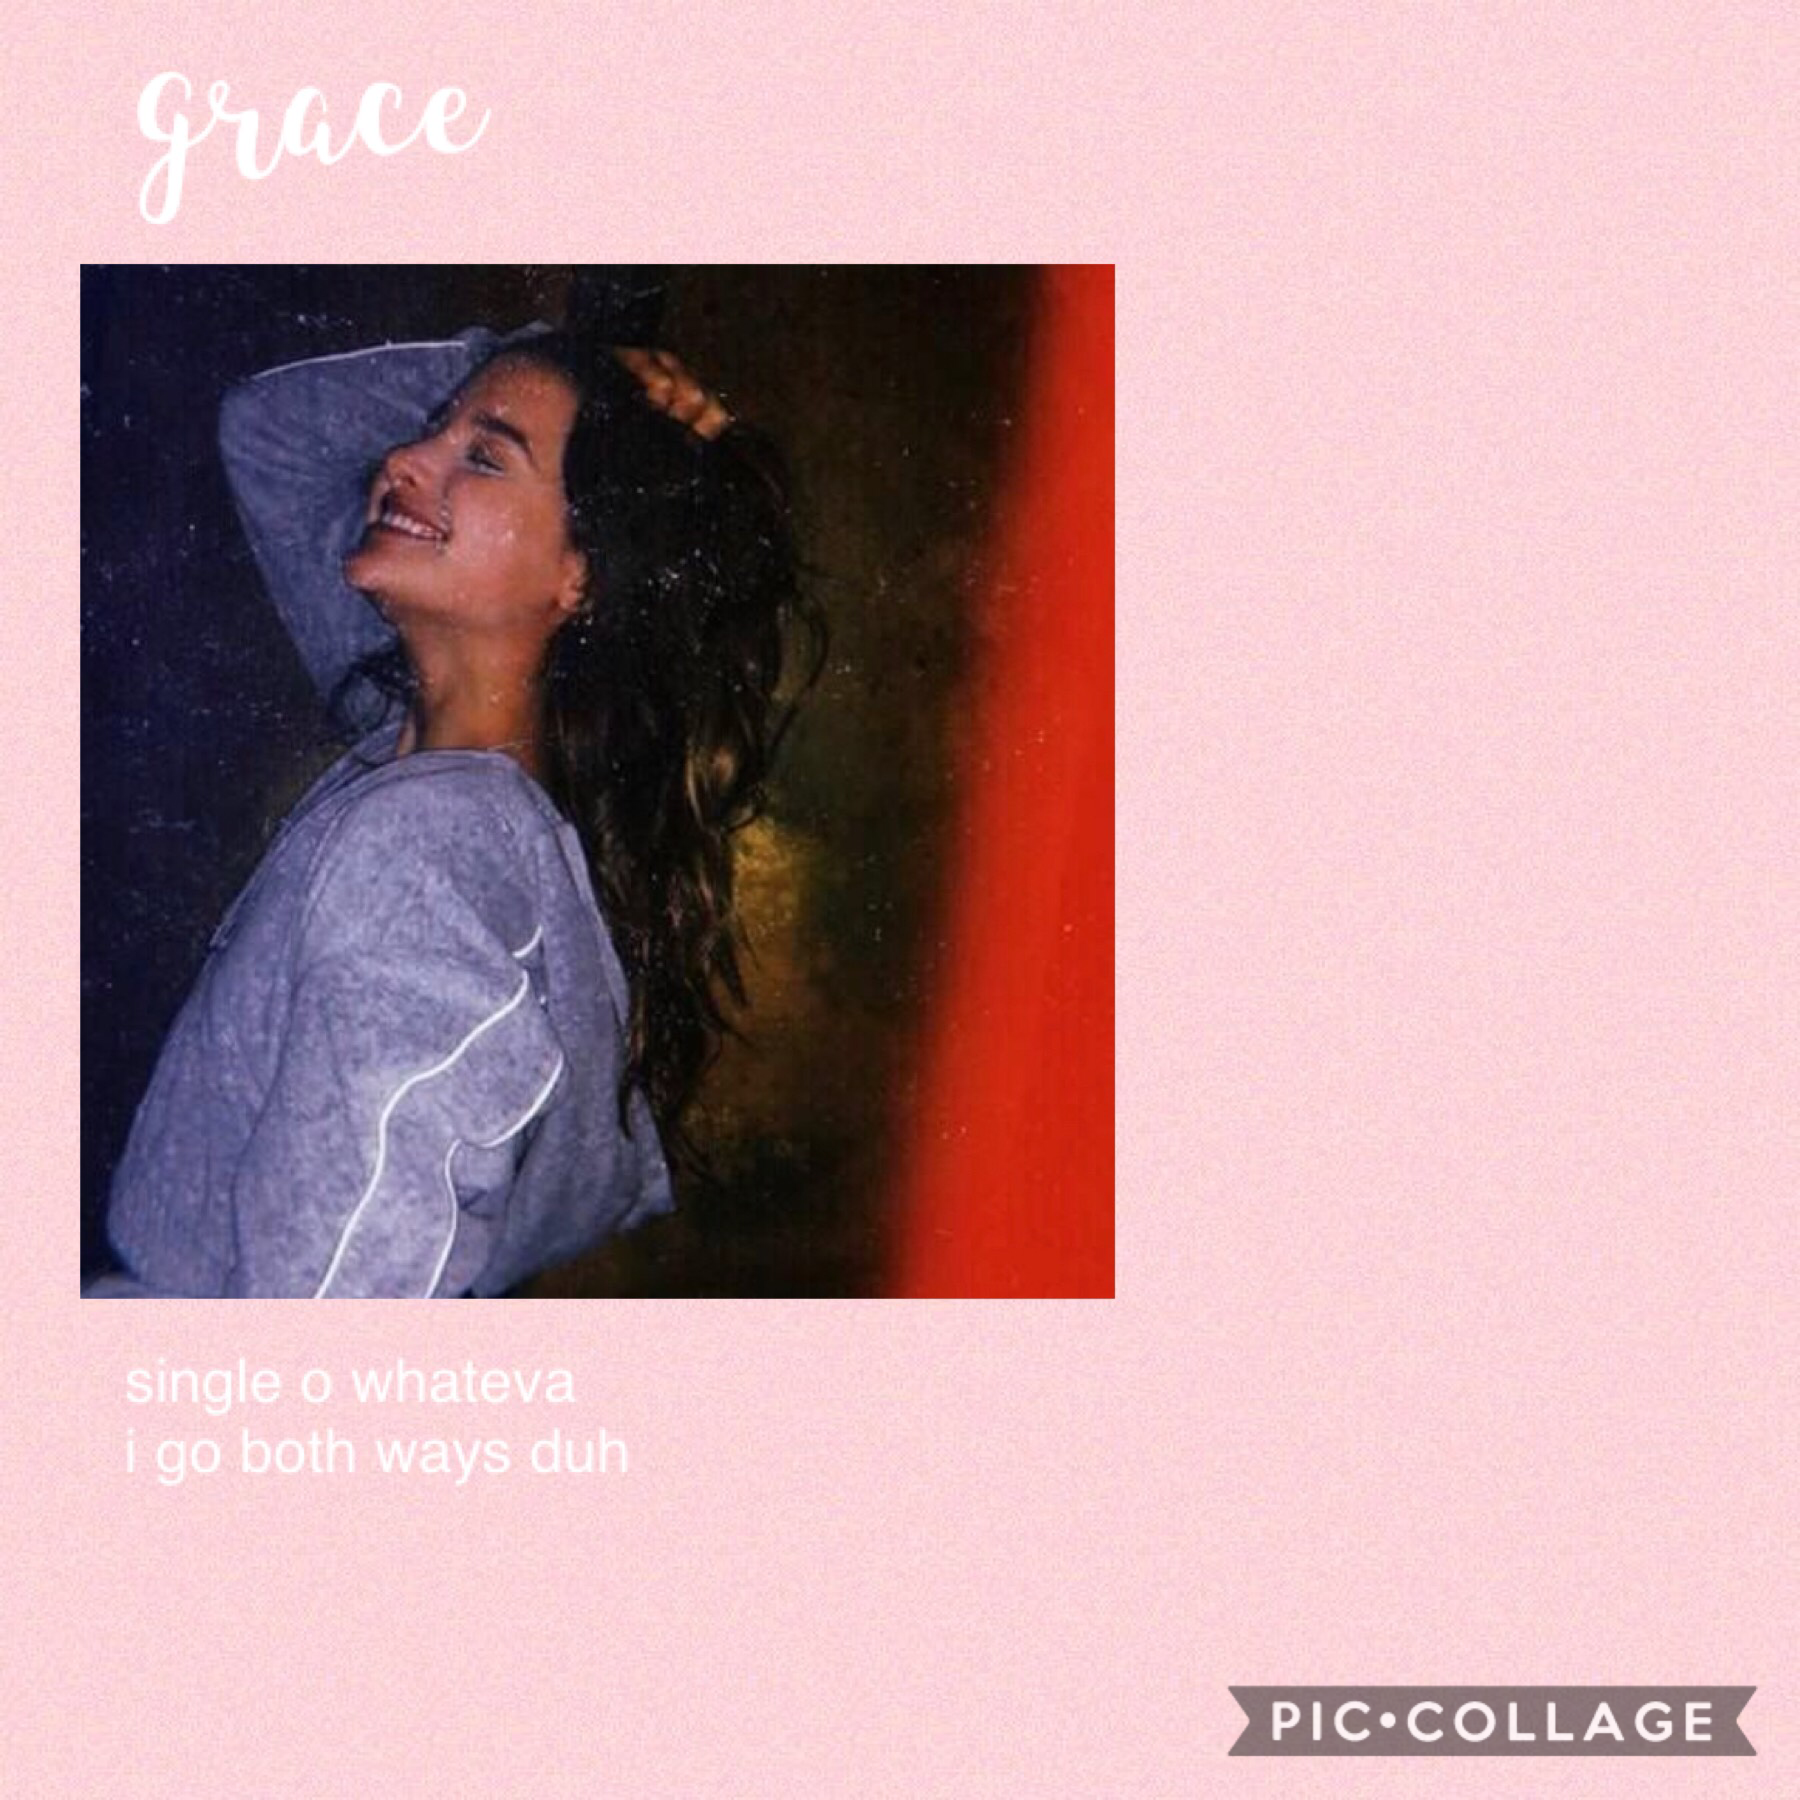 grace 